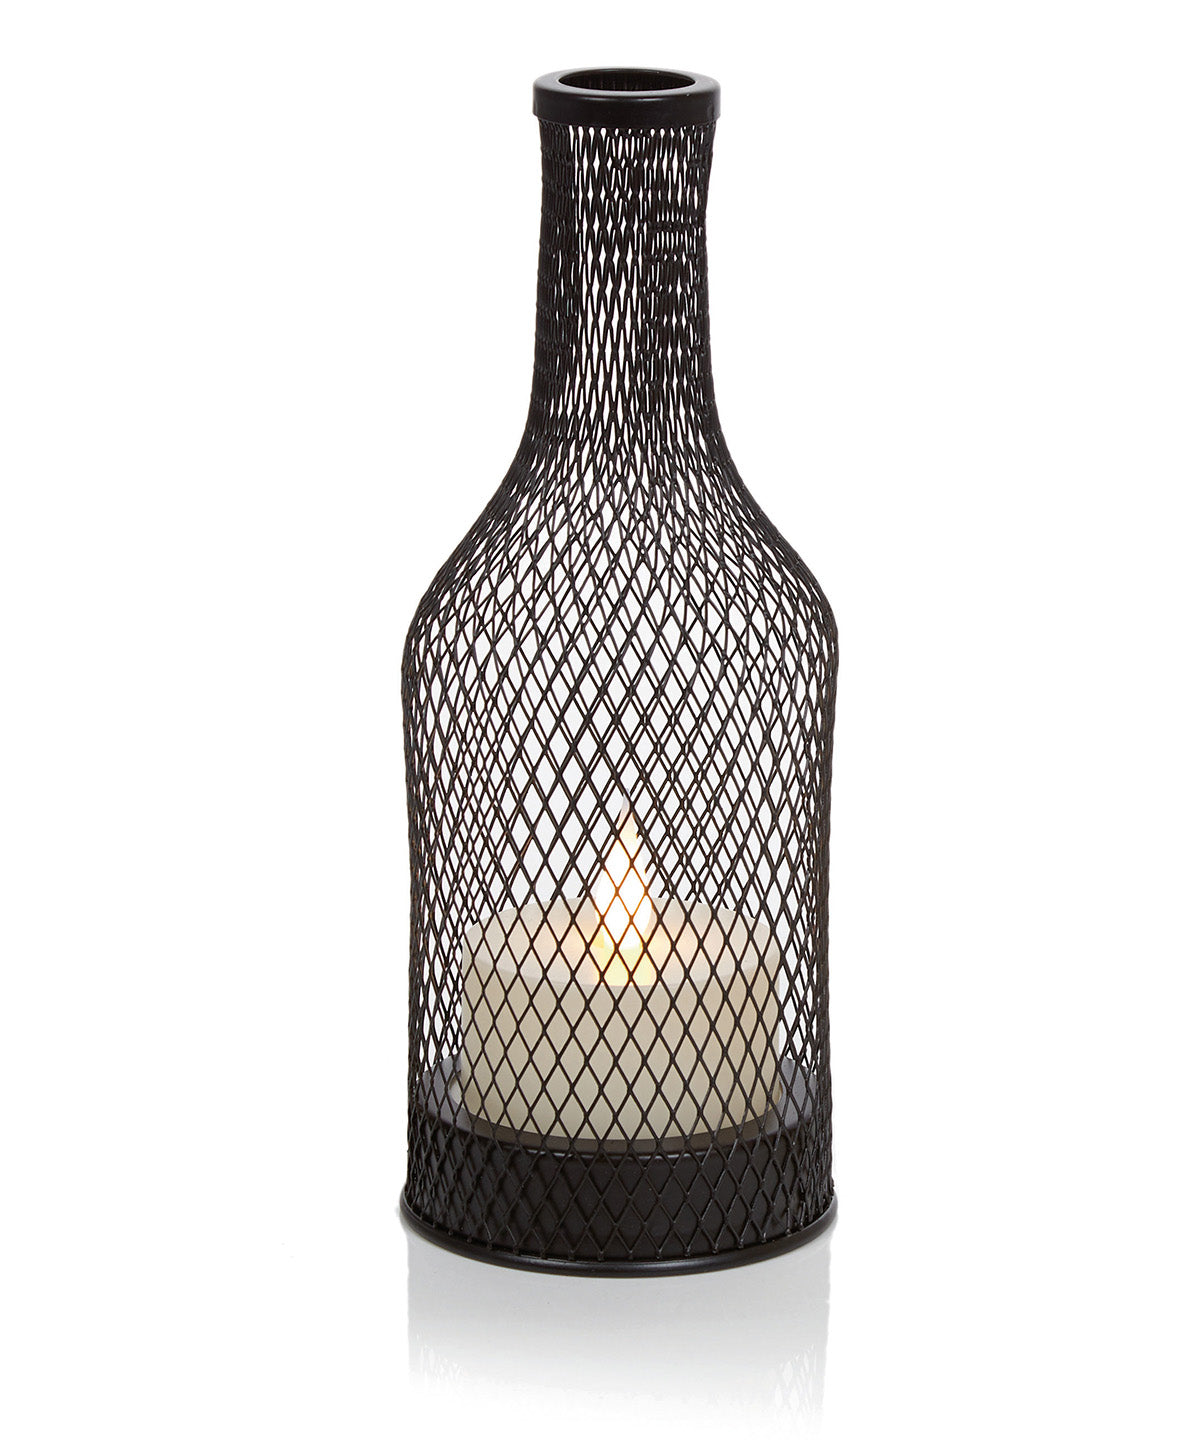 Jólaskraut - Mesh Bottle With Flame Decoration